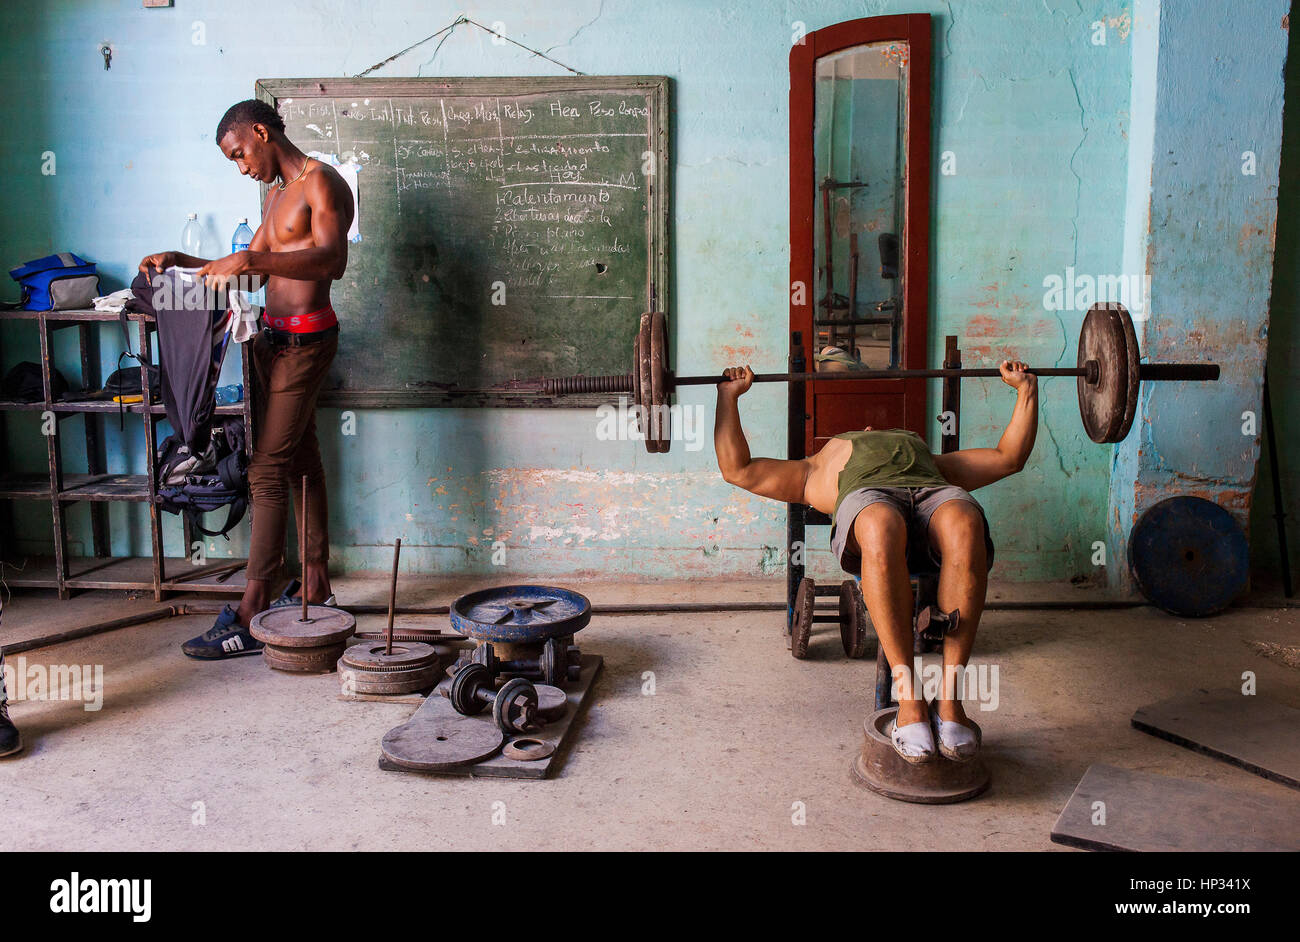 Costruttore di carrozzerie, muscleman, un uomo cubano si esercita in una palestra bodybuilding, in via San Rafael, Centro Habana, la Habana, Cuba Foto Stock